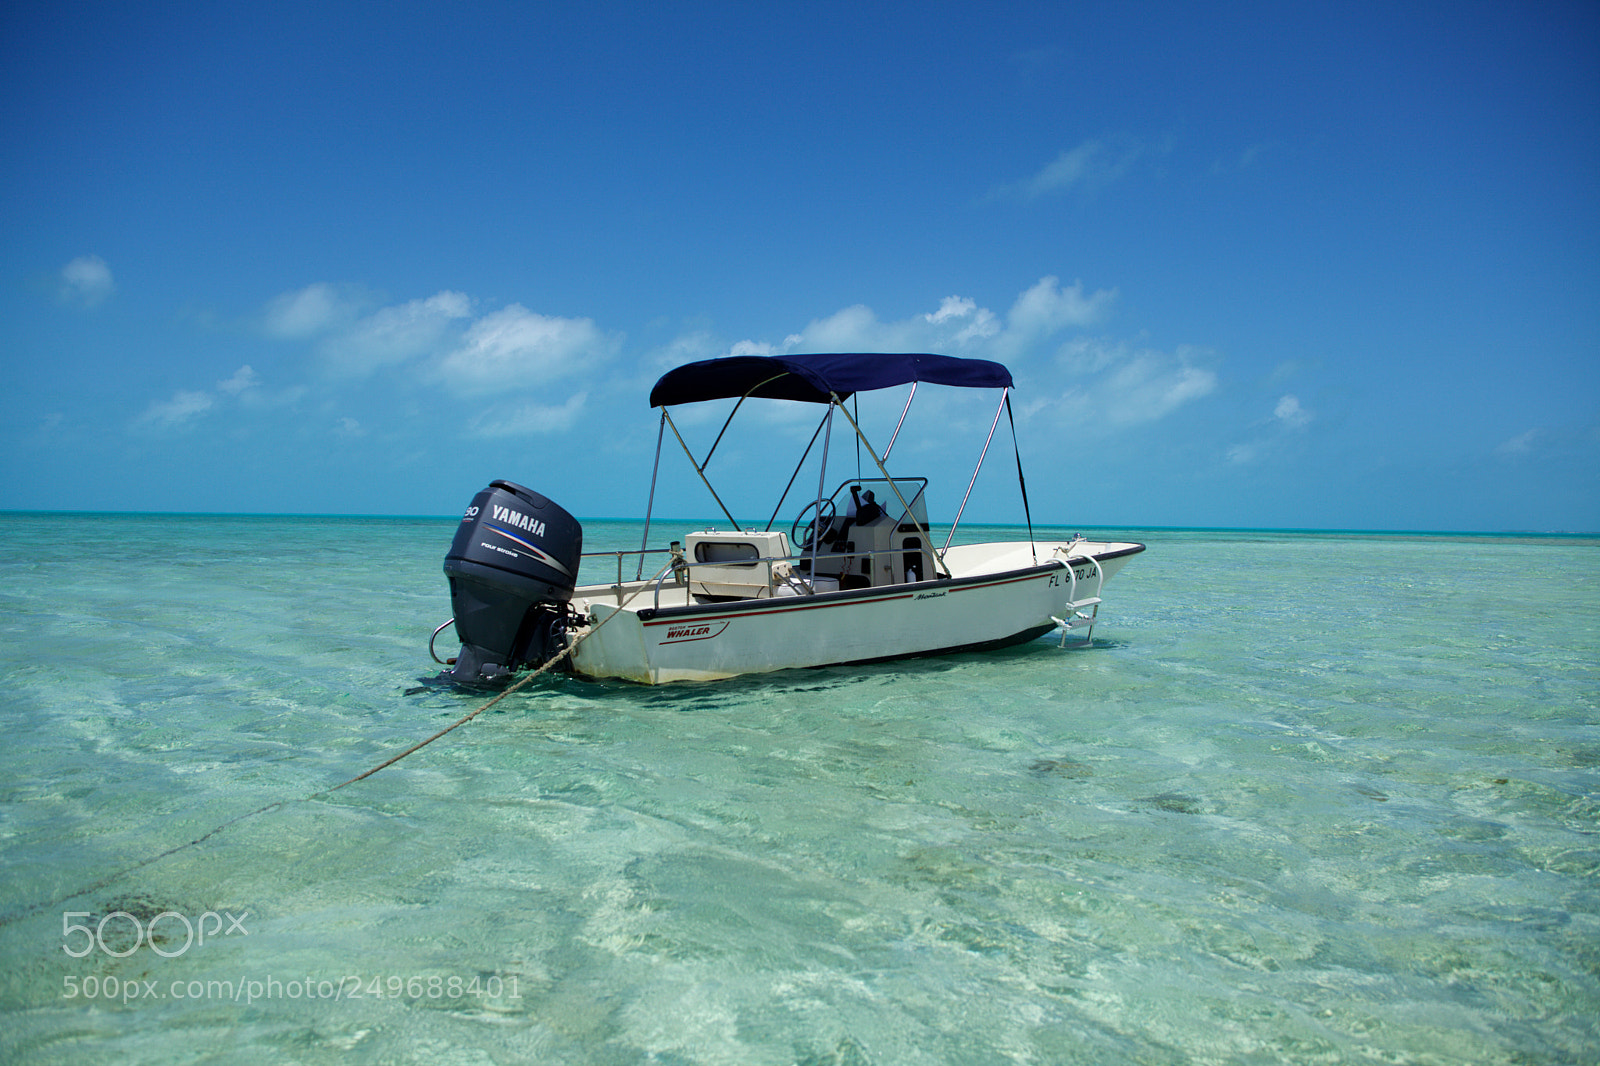 Canon EOS 5D Mark II sample photo. Boat in exuma, bahamas photography